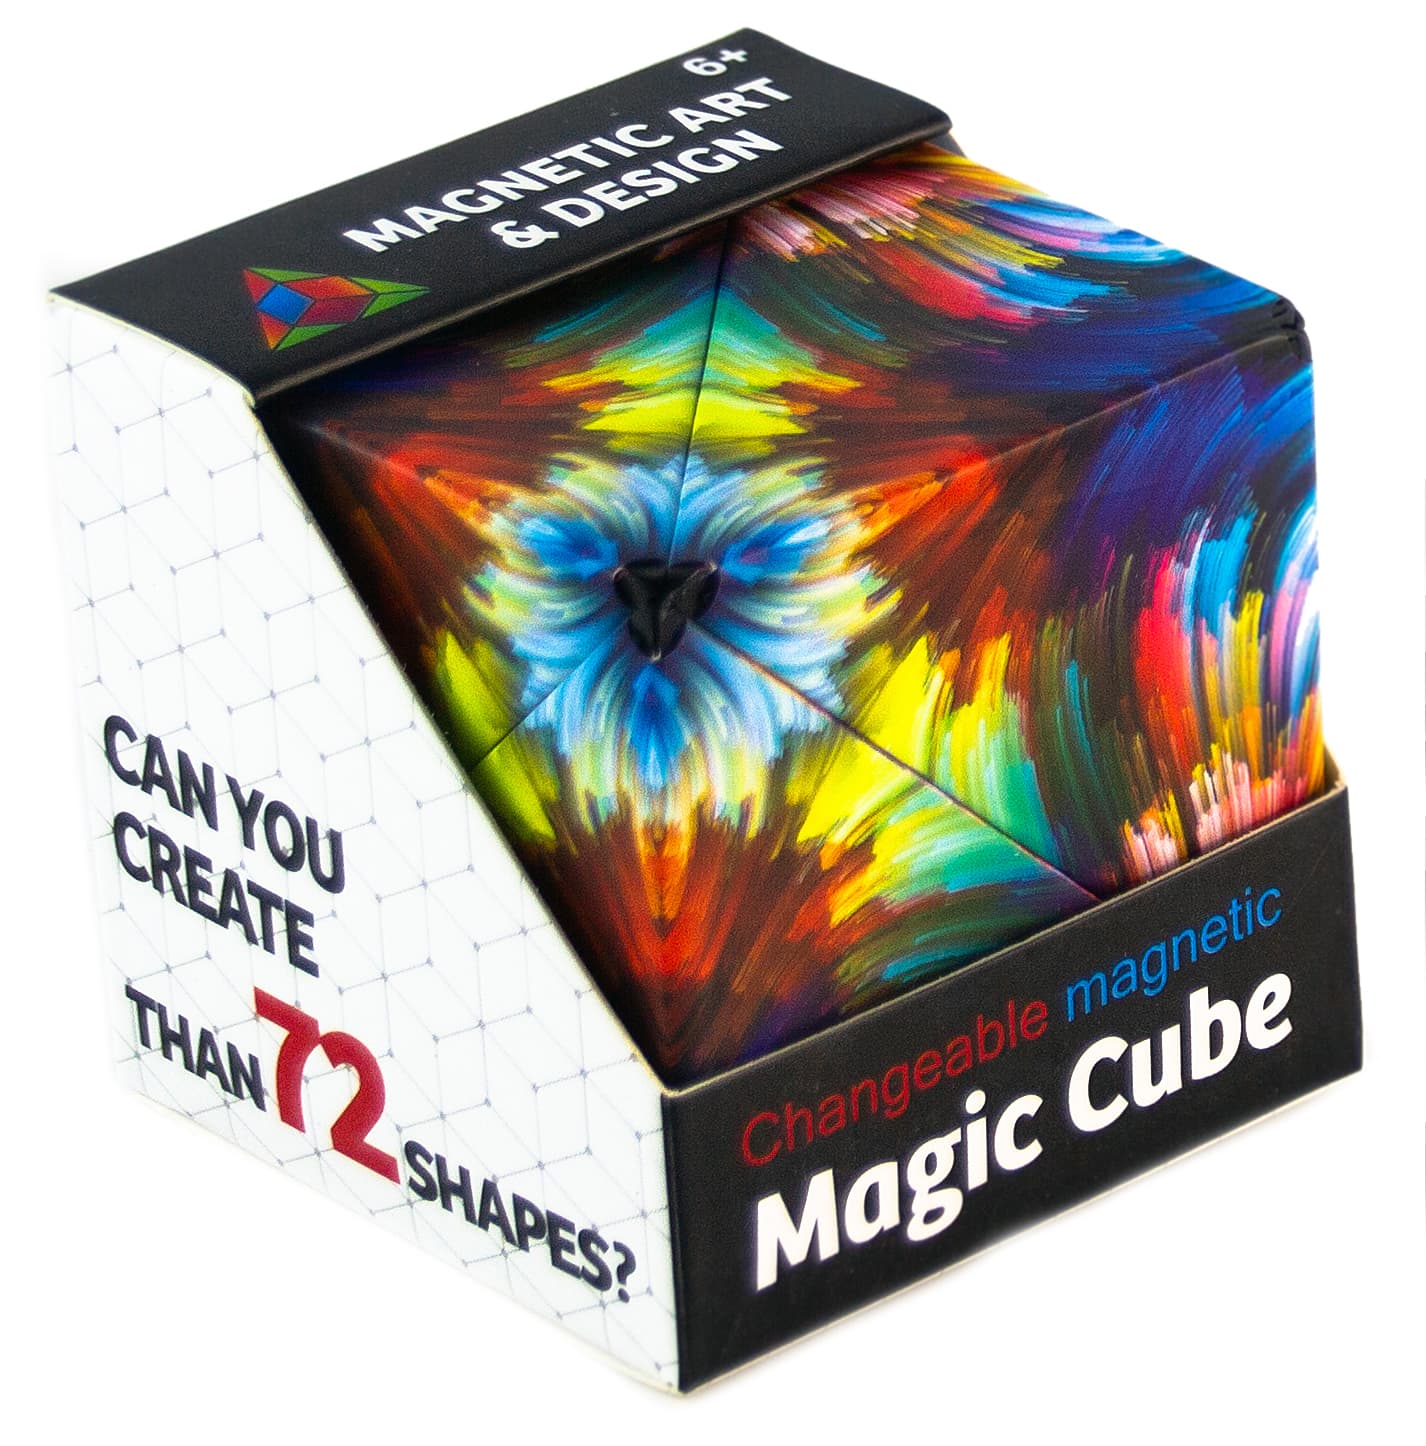 Логический магнитный кубик головоломка «Магический» 6.5 см. 076-5 / 72 фигуры